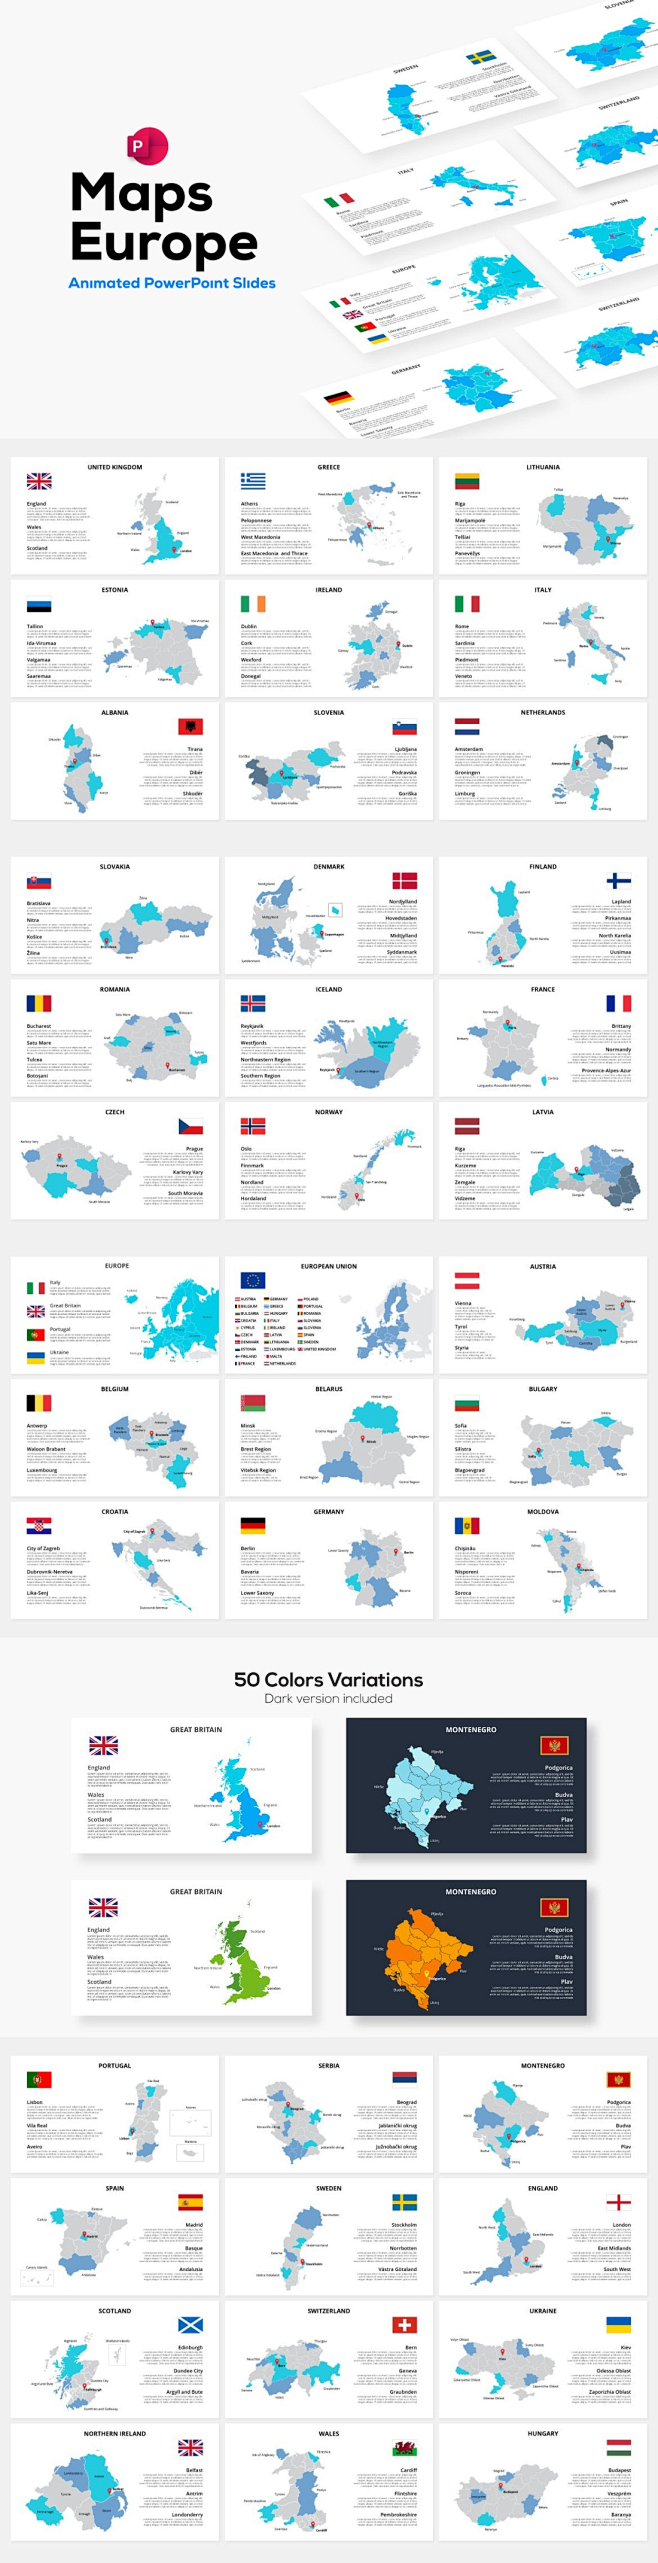 欧洲 地图 动画 设计素材